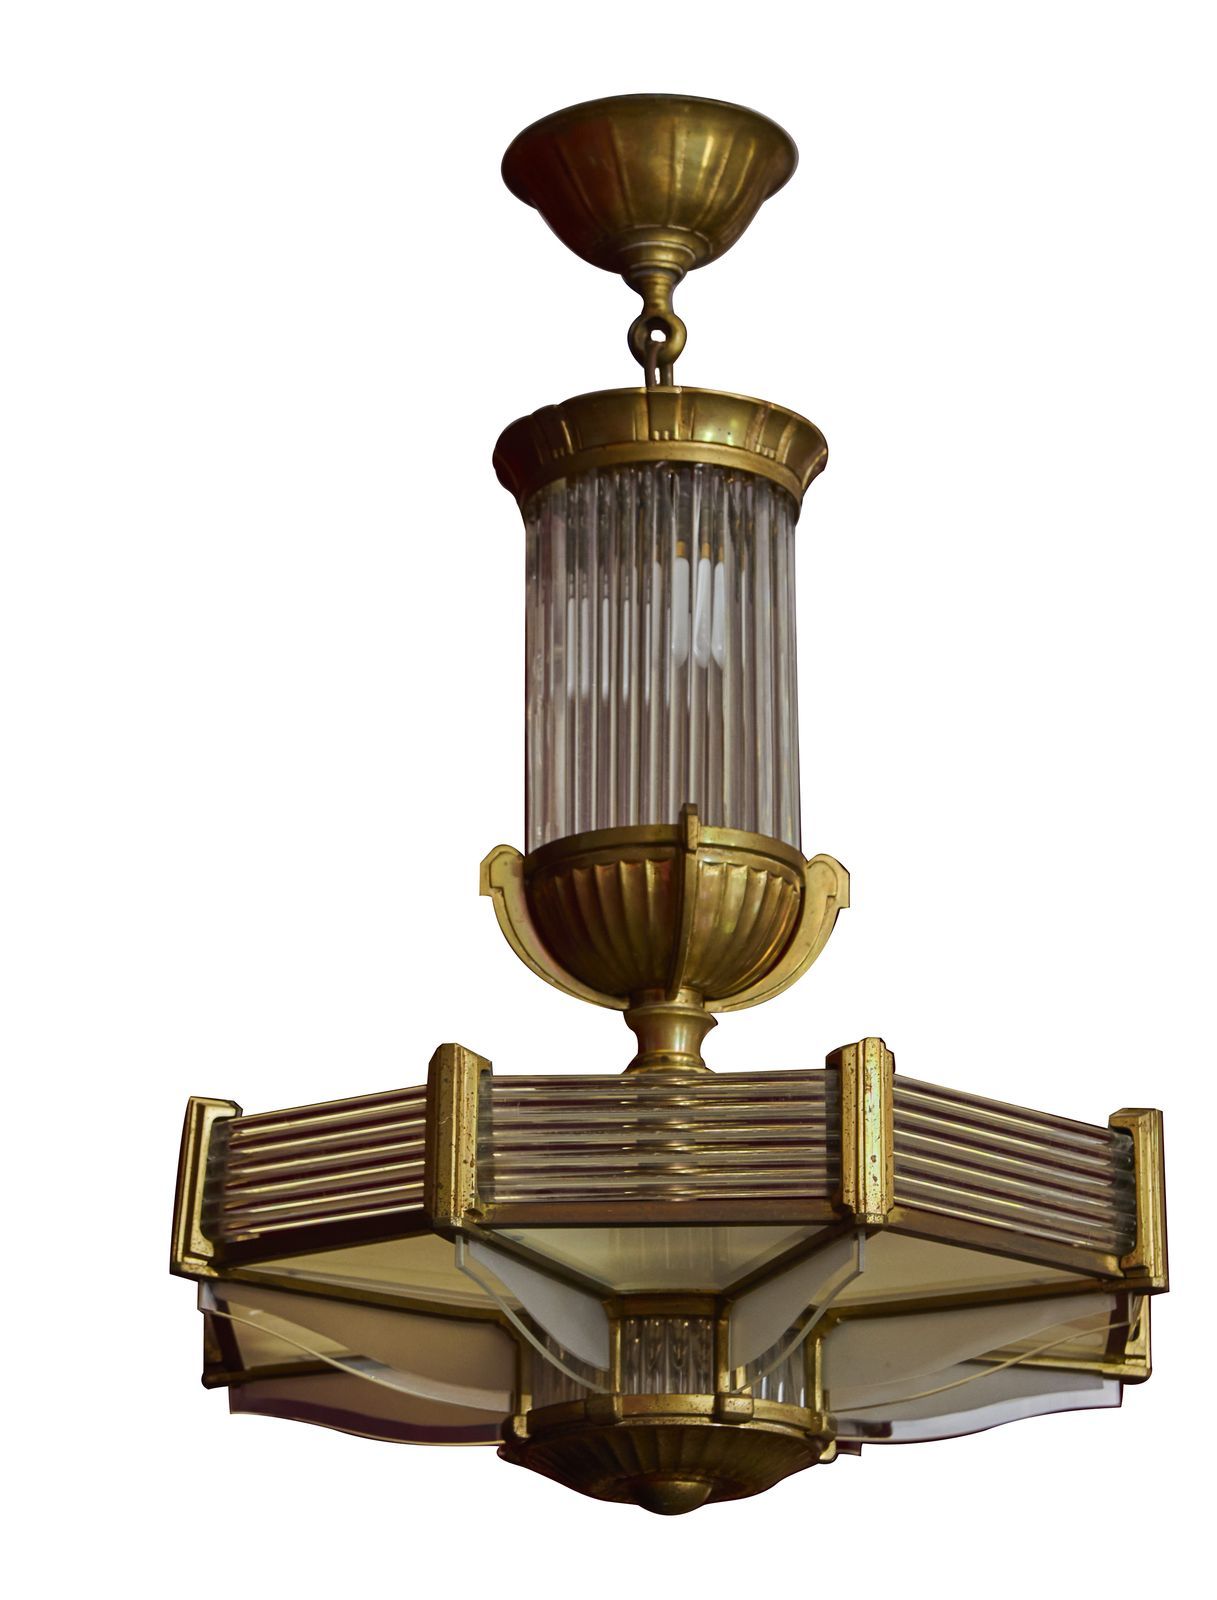 Null 77-Etablissements Petitot

Octagonal bronze chandelier, the walls formed by&hellip;